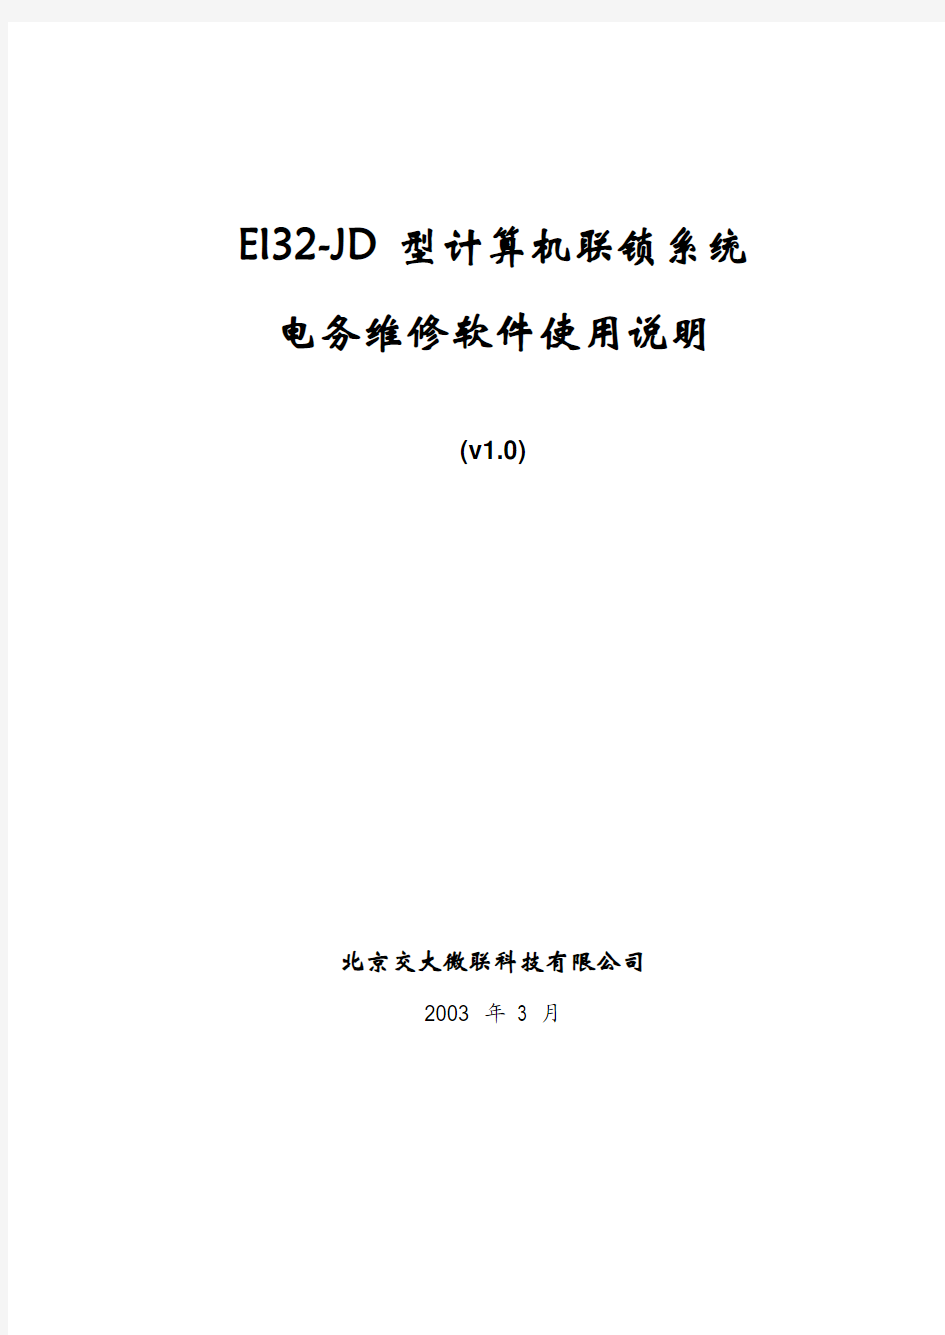 附件1：EI32-JD型计算机联锁电务维修软件使用说明